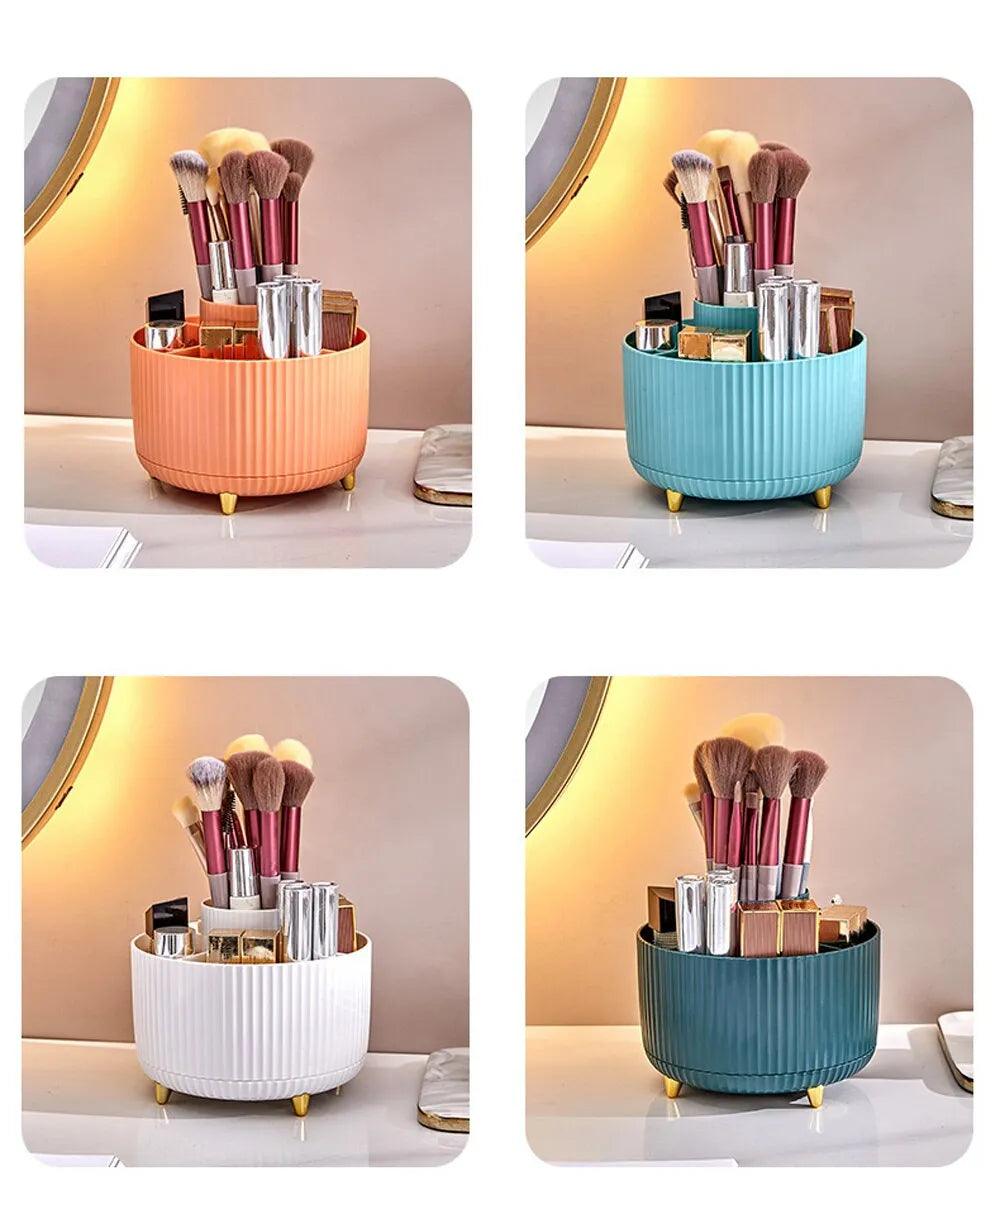 360°Rotating Desktop Makeup Brushes Organizer Cosmetic Storage - ADEEGA